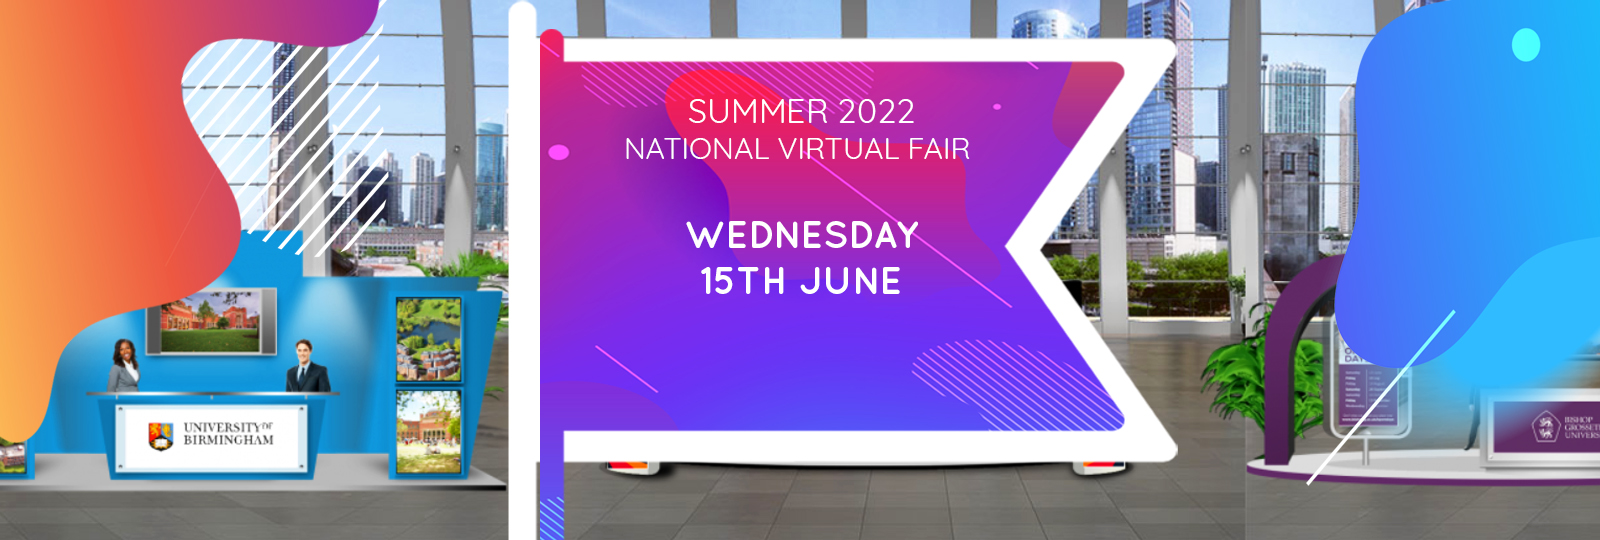 National Virtual Fair Summer 2022 Fair